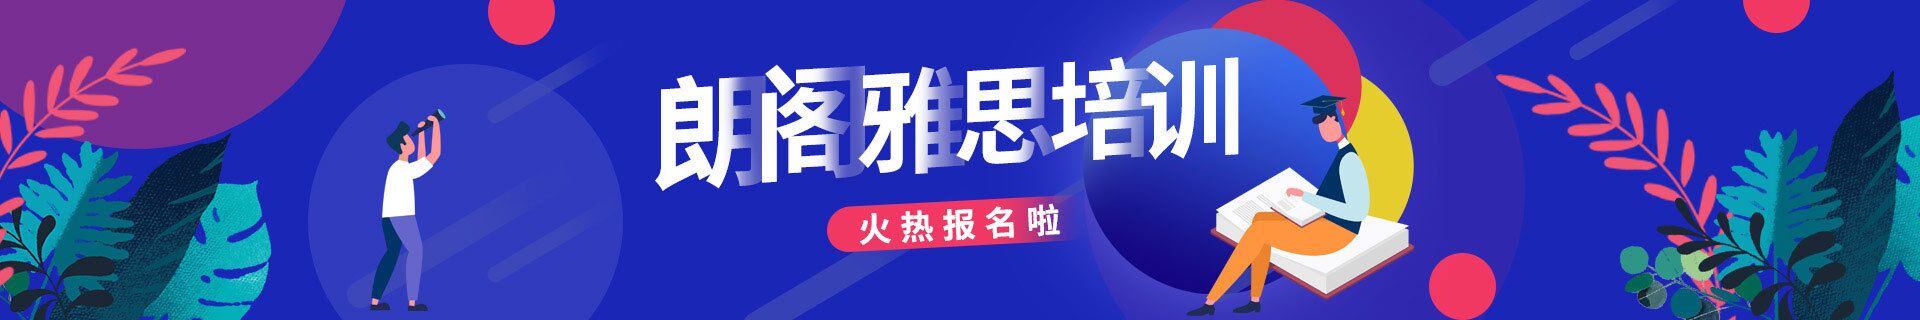 上海杨浦环球雅思教育培训机构